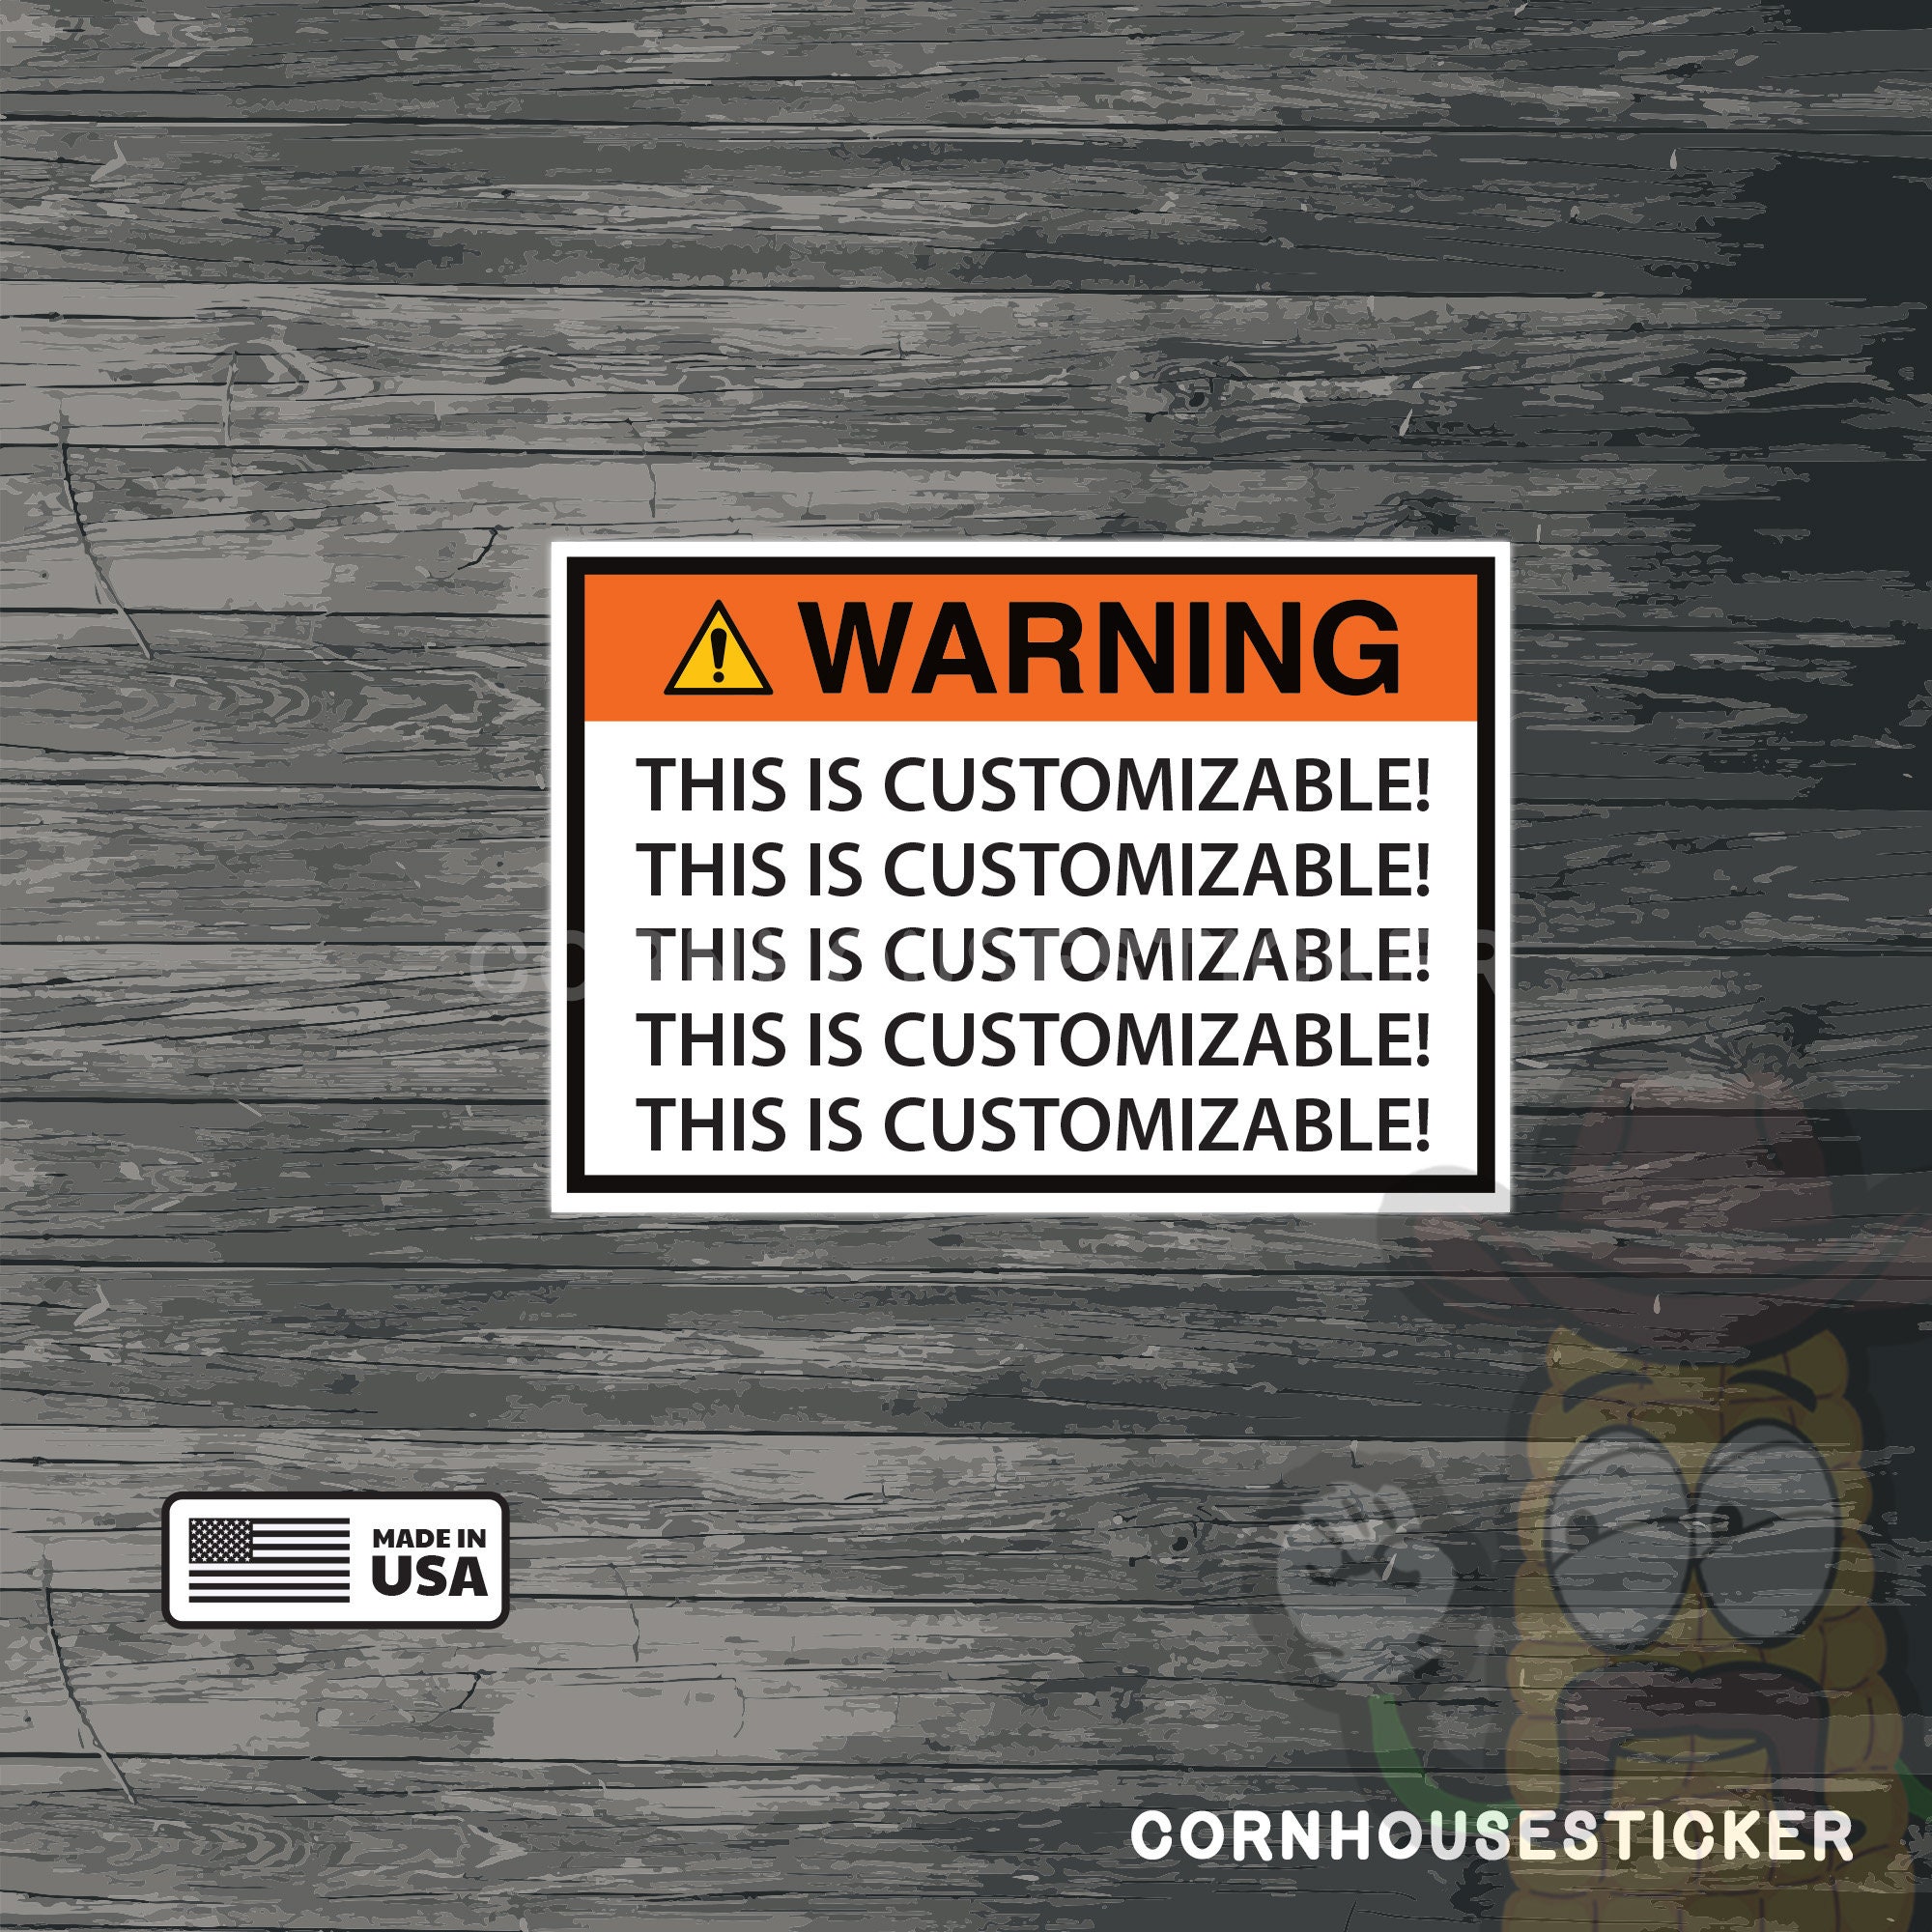 Funny Warning Label, Gift for Coworker, Danger Warning, Funny Shop Sticker, Prank  Sticker, 